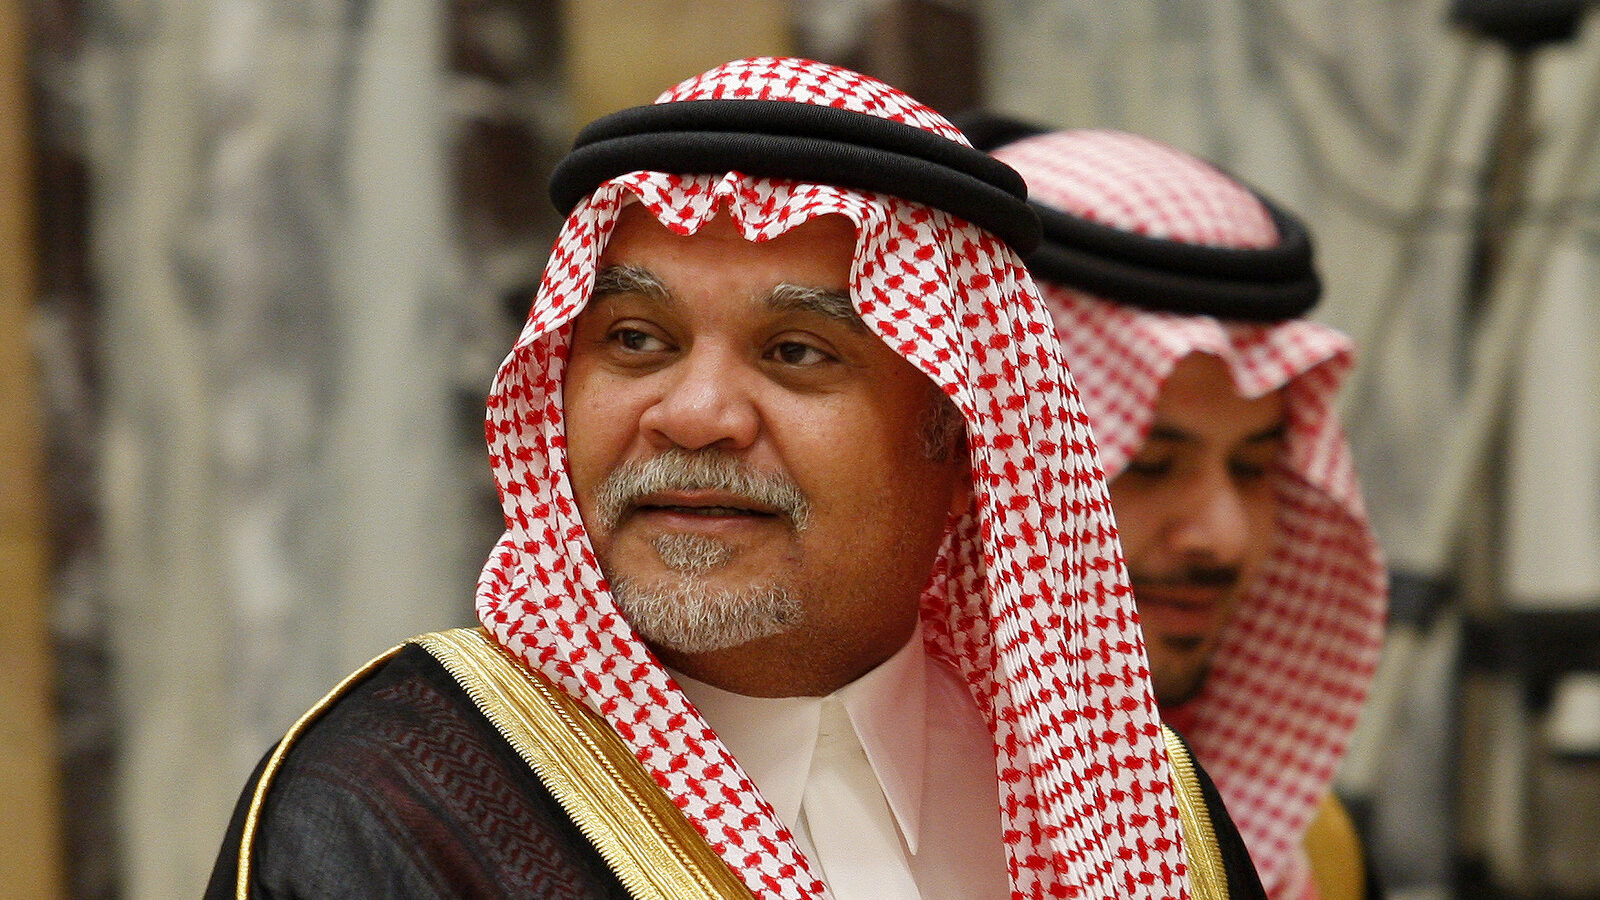 Saudi Prince Bandar bin Sultan seen at his palace in Riyadh, Saudi Arabia. (AP/Hassan Ammar)